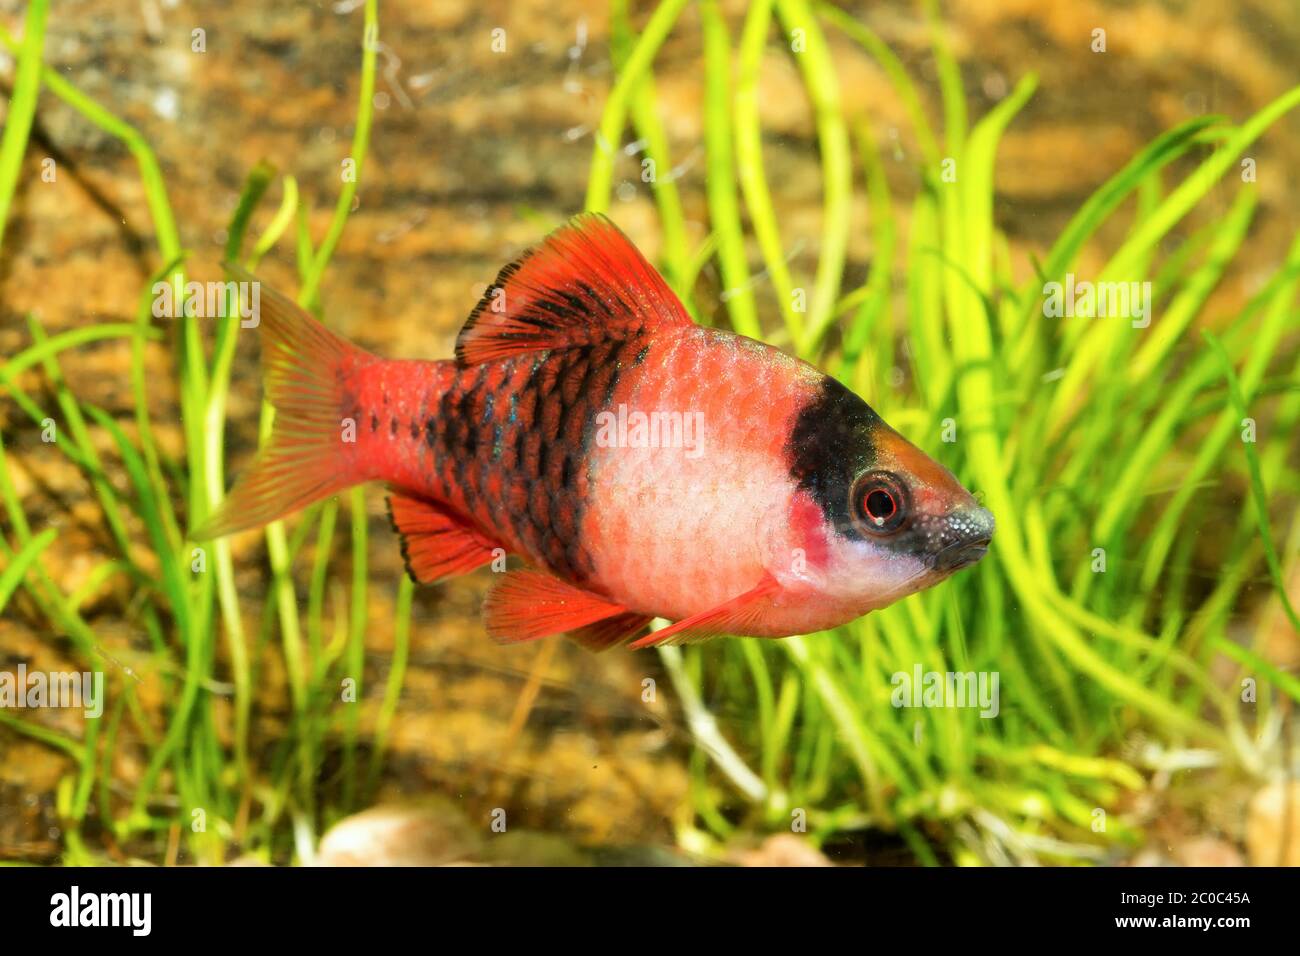 Aquarium barb fish Stock Photo